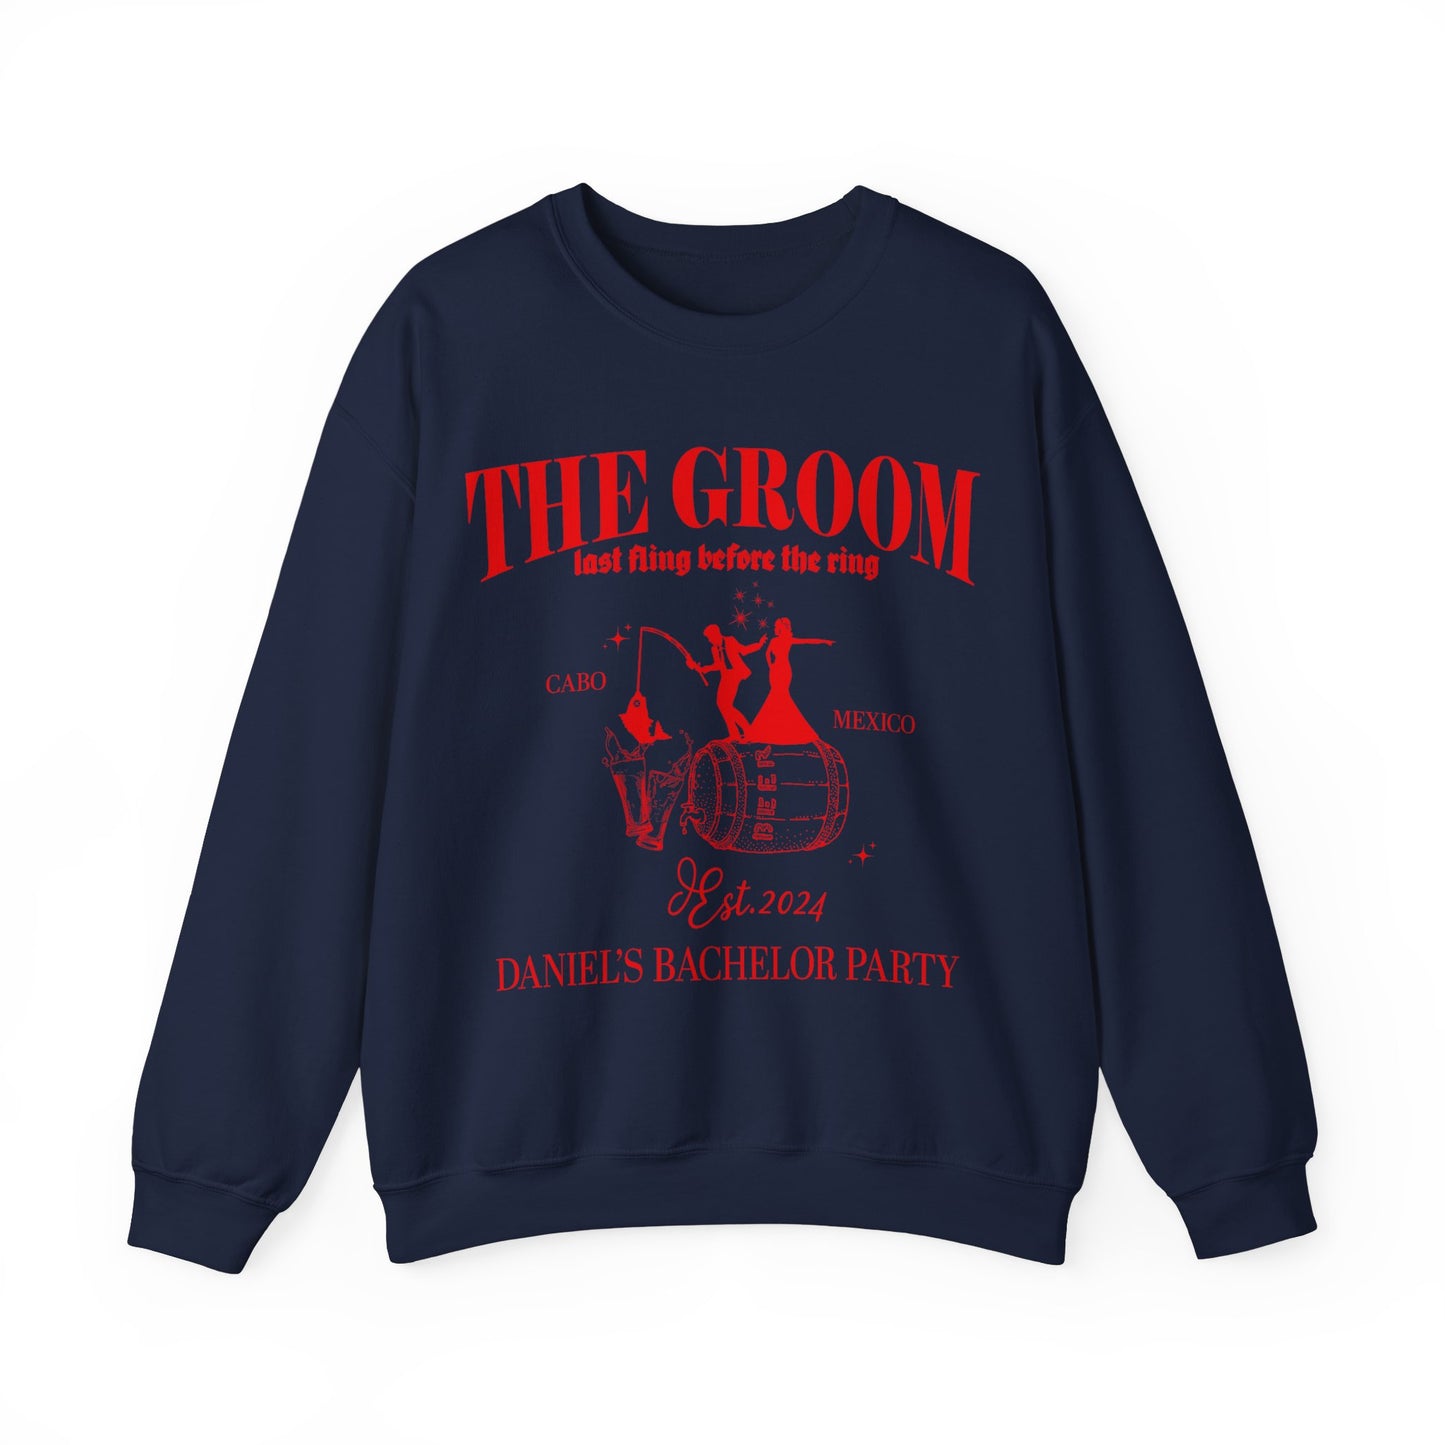 The Groom Bachelor Party Sweatshirt, Groomsmen Sweatshirt, Group Bachelor Sweatshirt, Fishing Bachelor Party Sweatshirt, 12 S1604